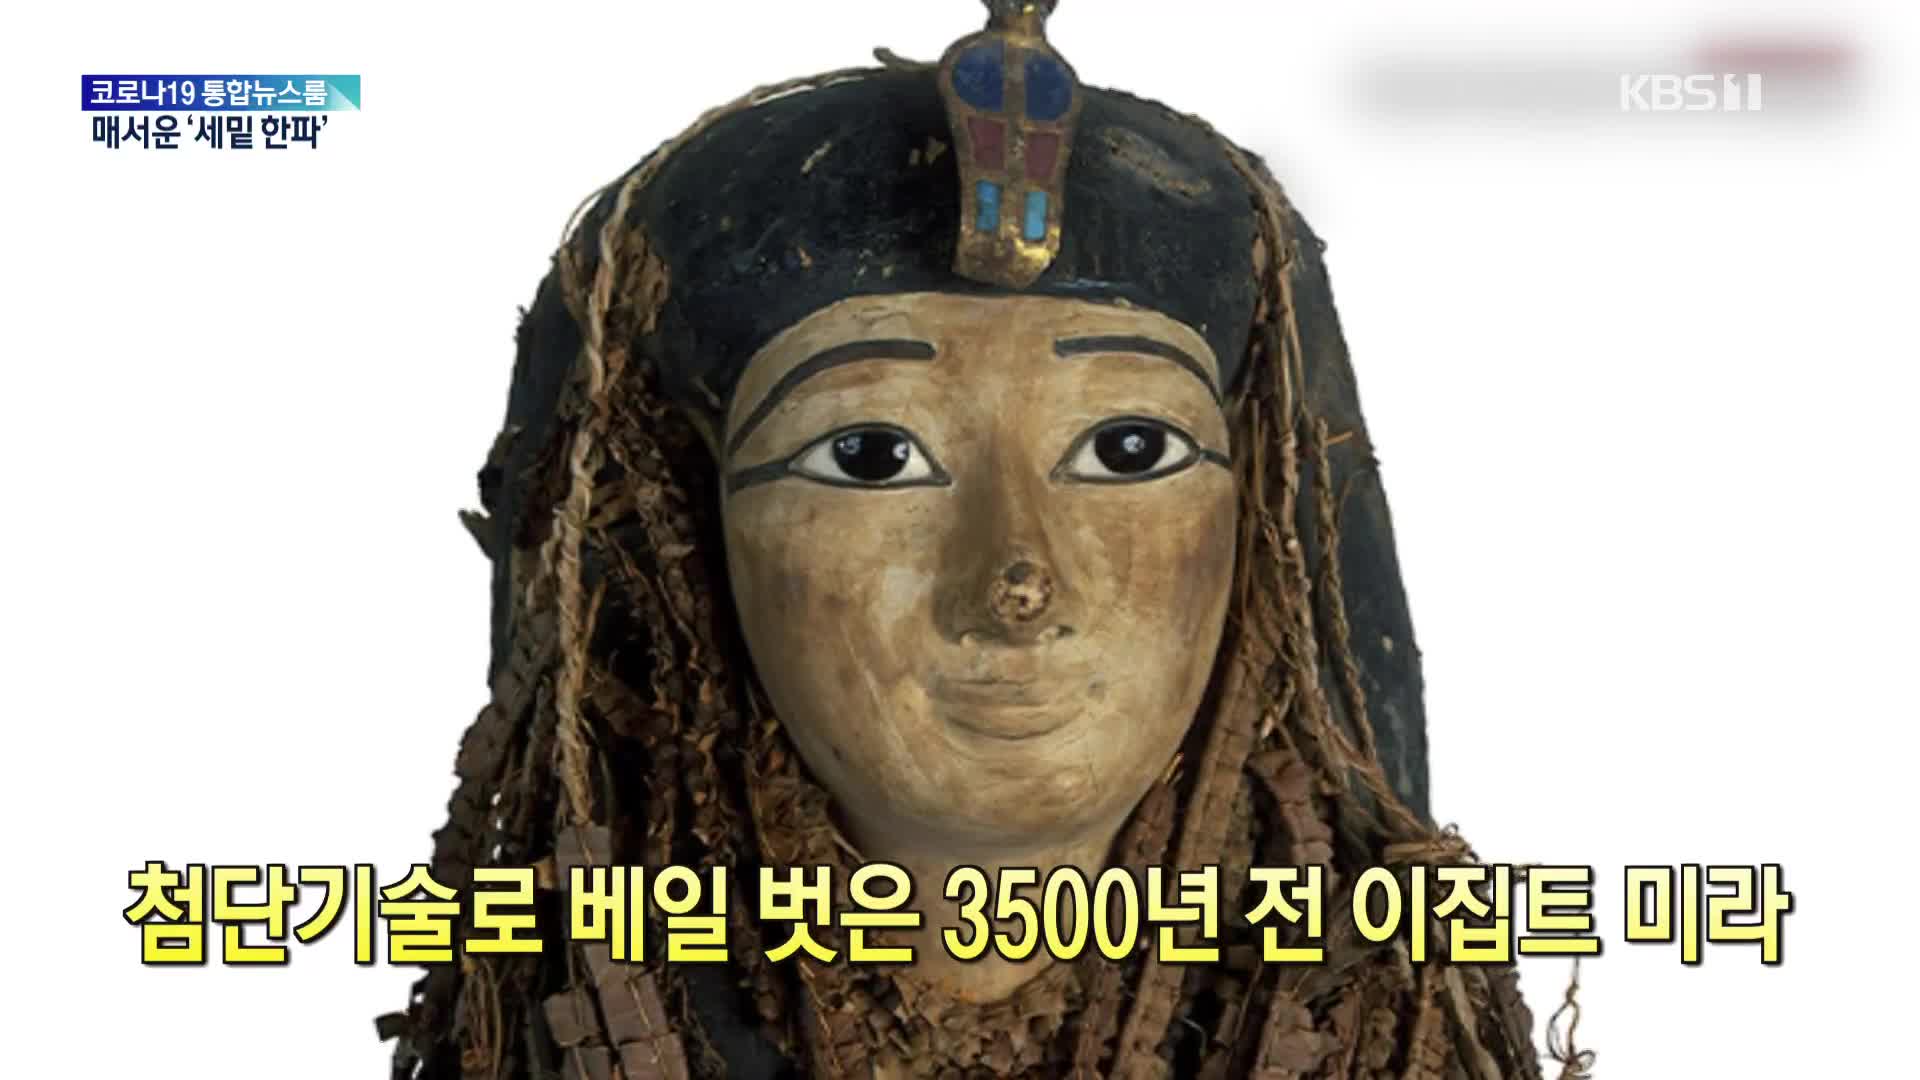 [톡톡 지구촌] 첨단기술로 베일 벗은 3500년 전 이집트 미라